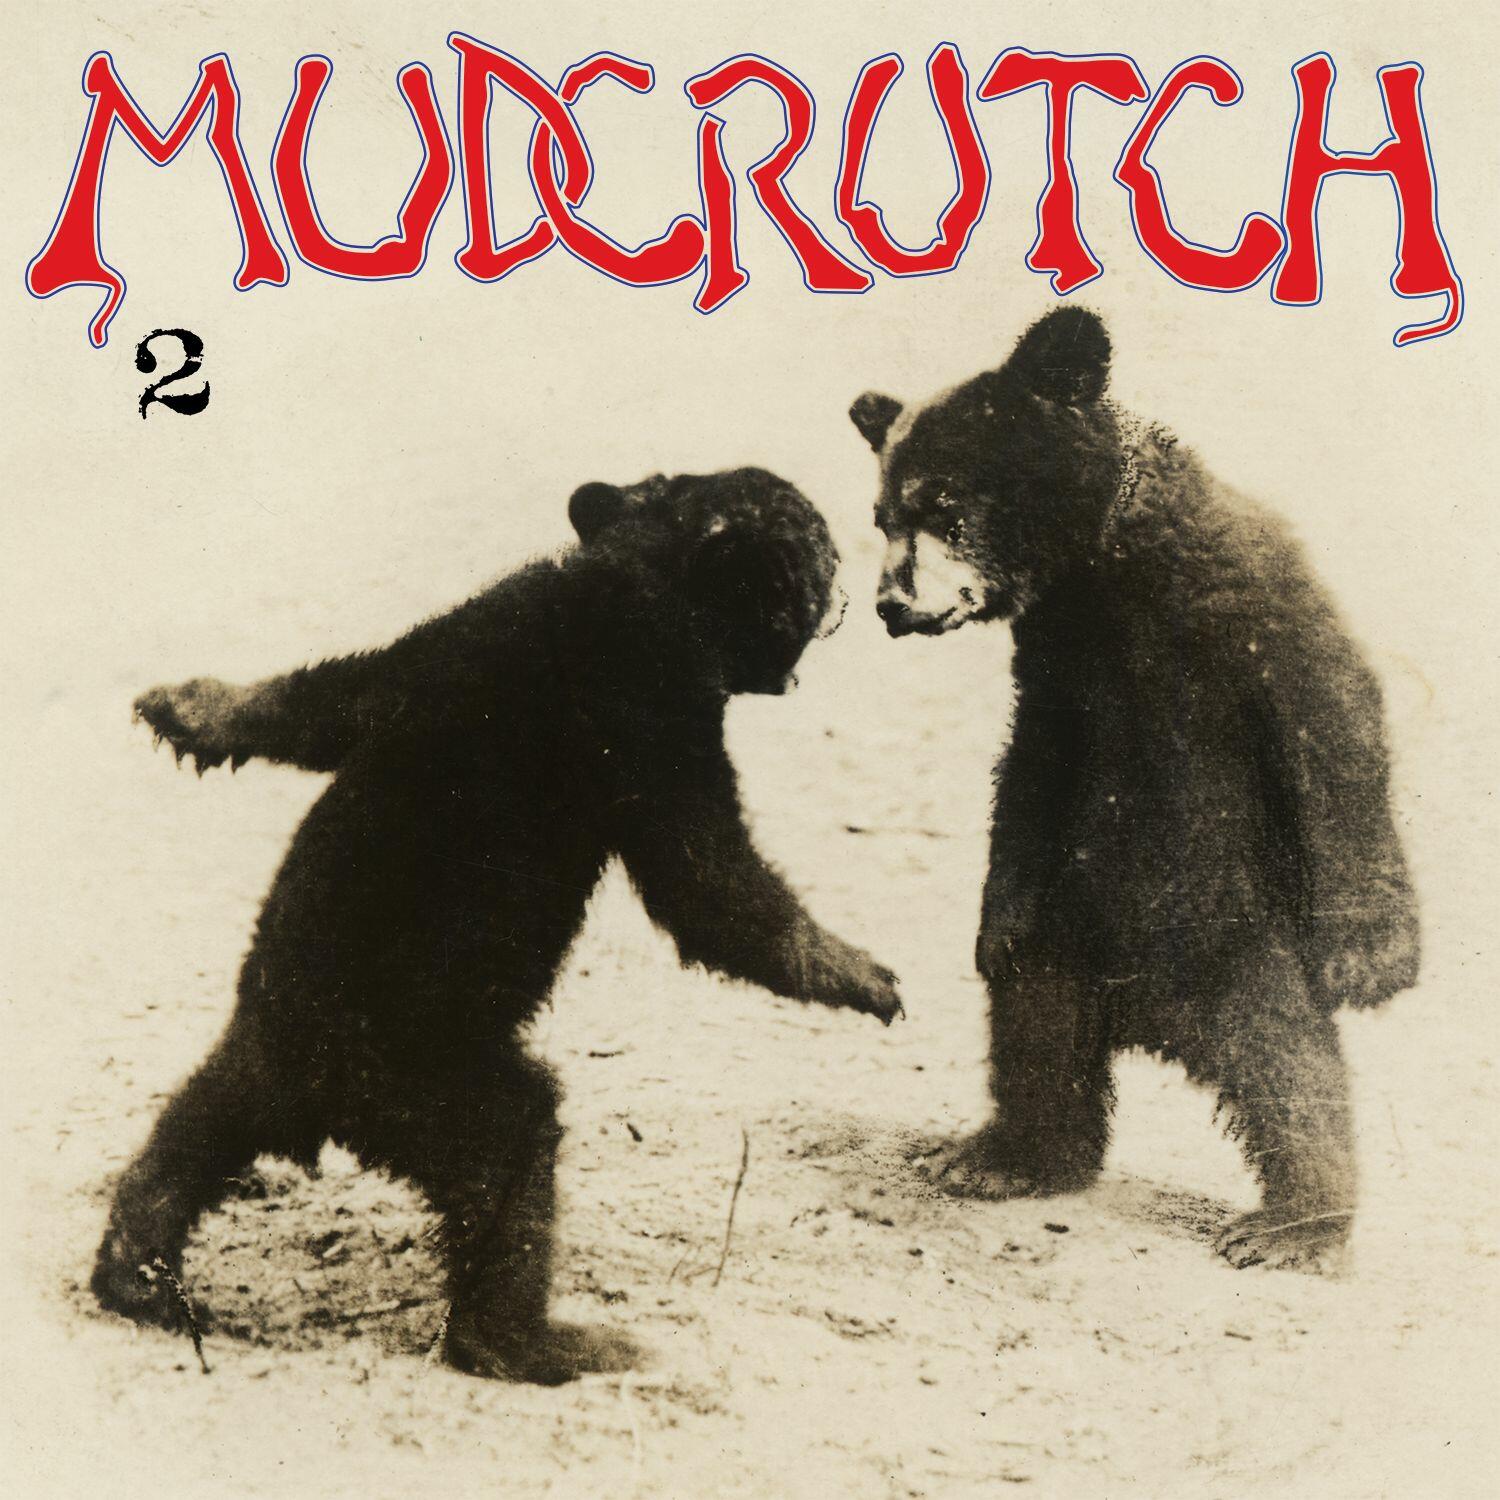 Mudcrutch 2 Iheartradio